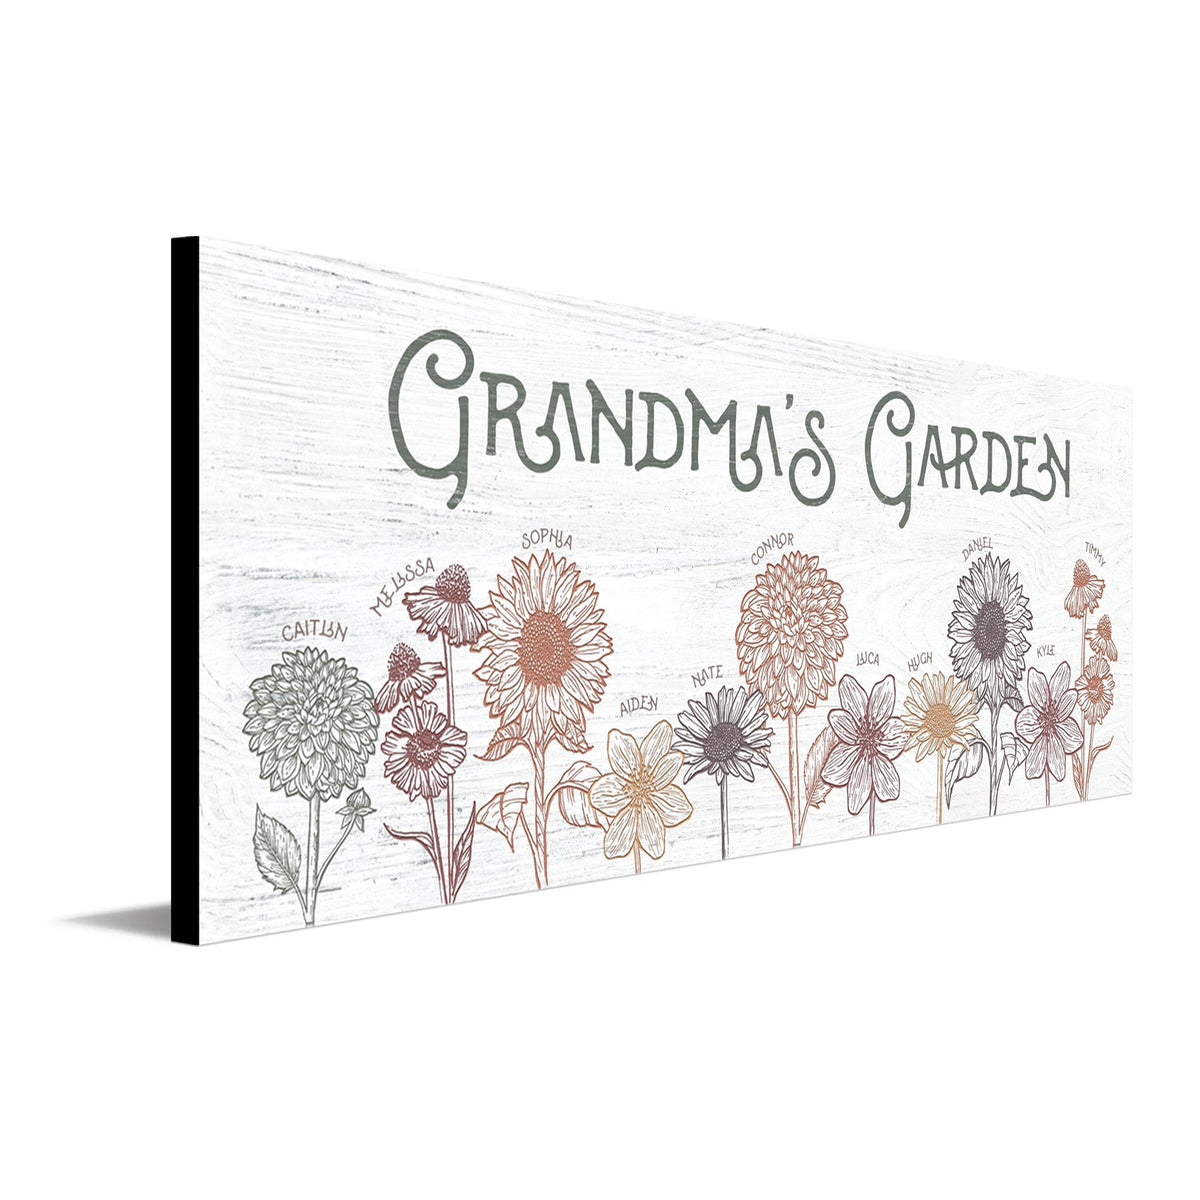 Custom Presents for Grandma, Garden Gift for Grandma, Grandmother's Gift